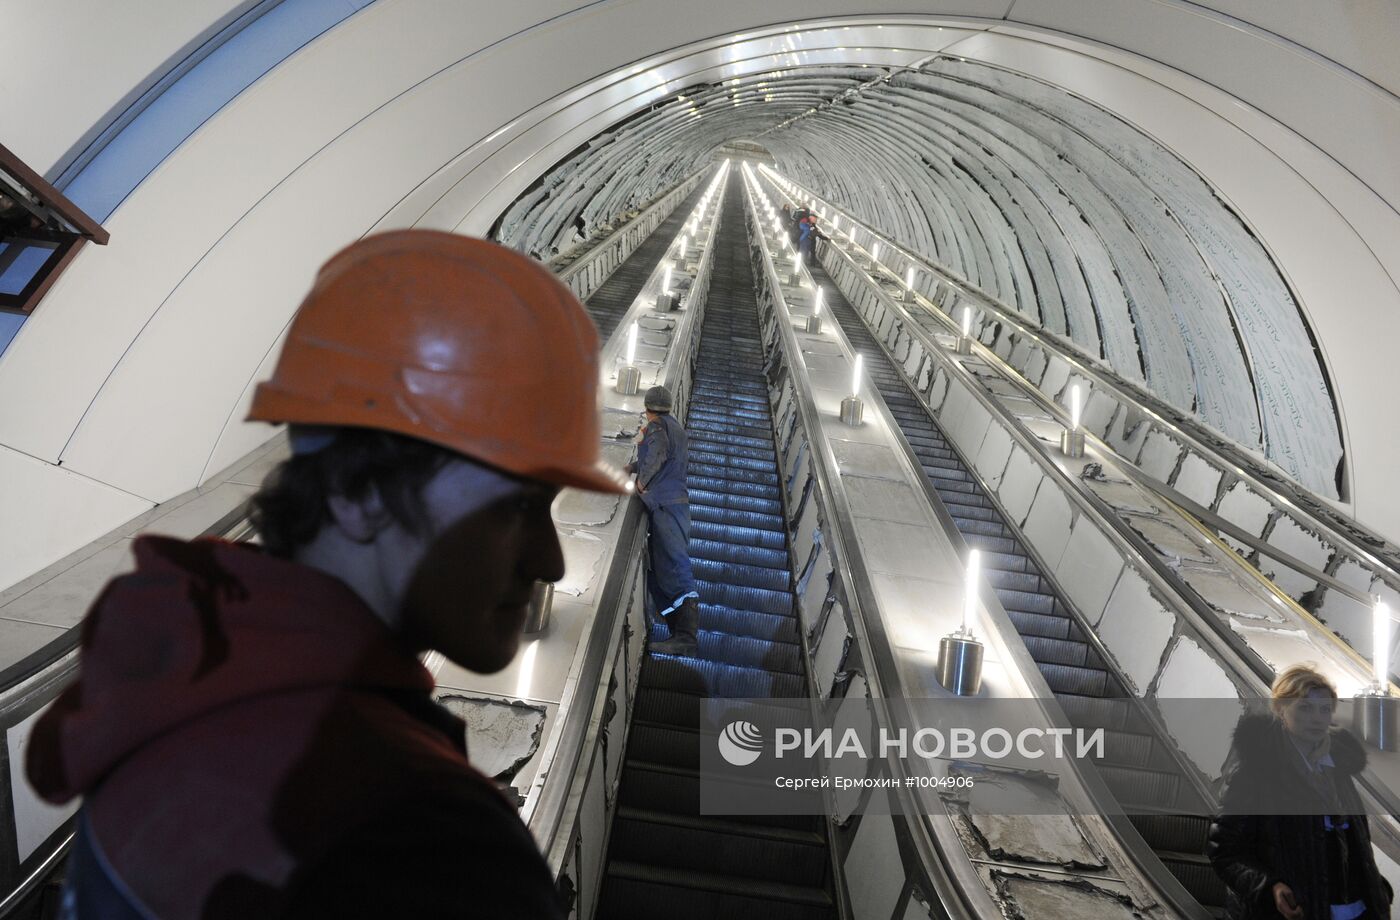 Подготовка к открытию станции метро "Адмиралтейская"